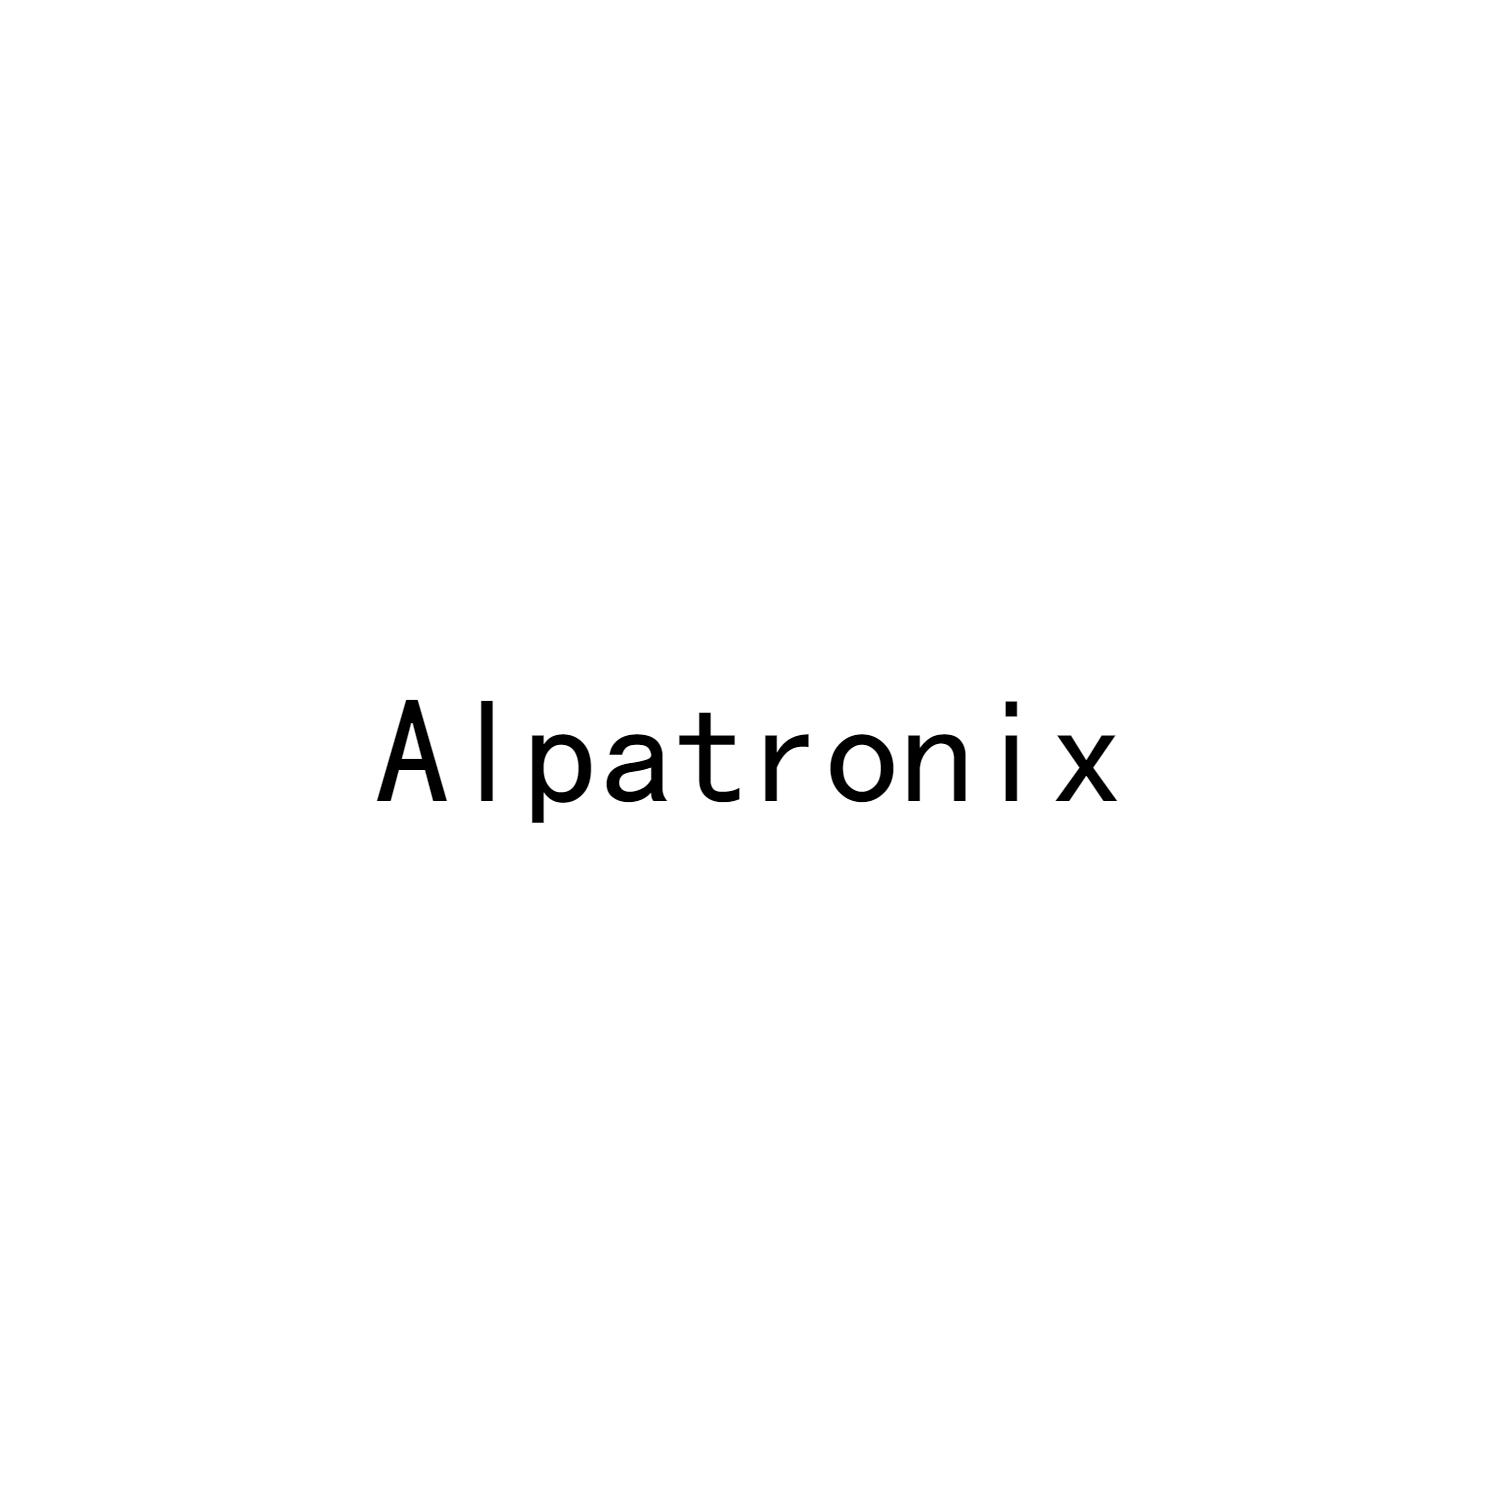 ALPATRONIX